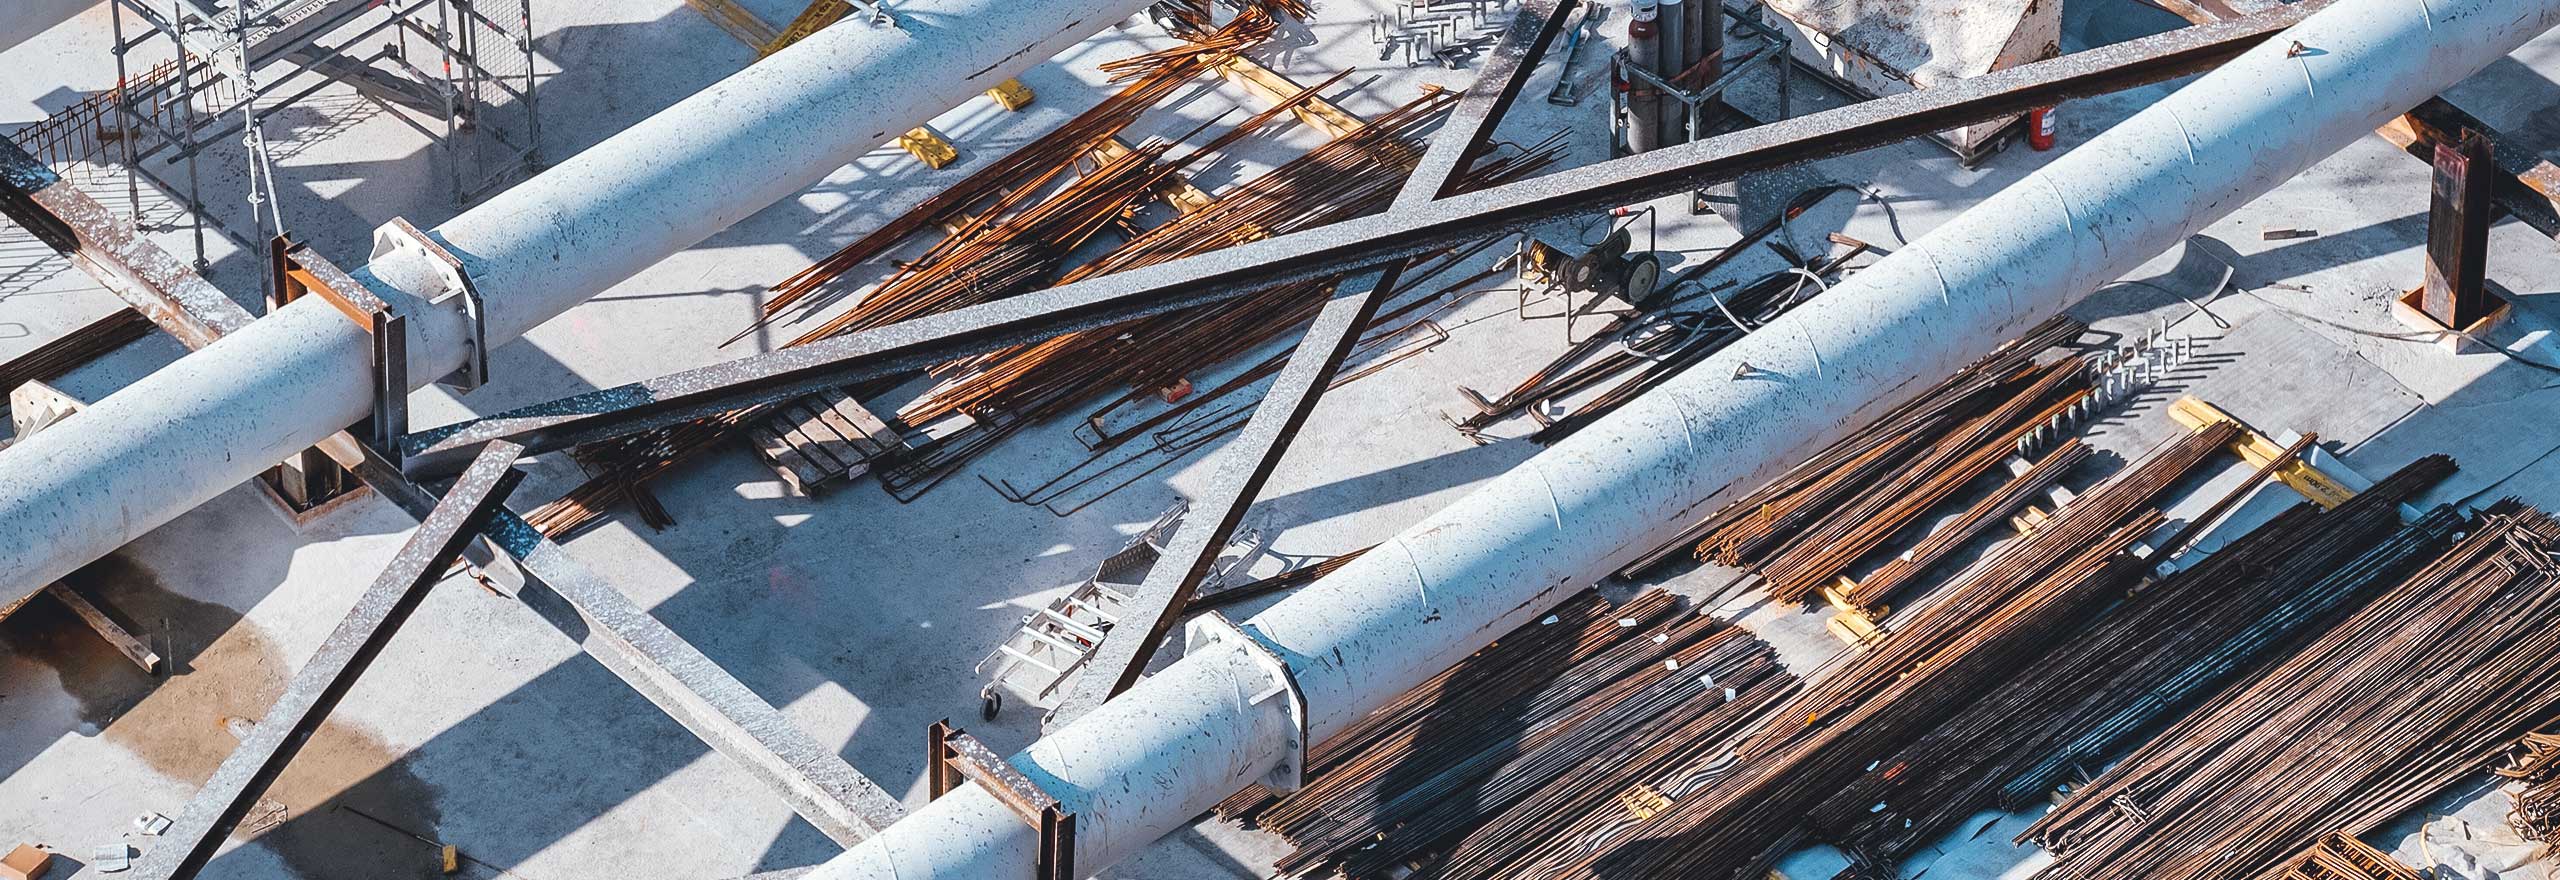 Image de tuyaux et d’échafaudages sur un chantier